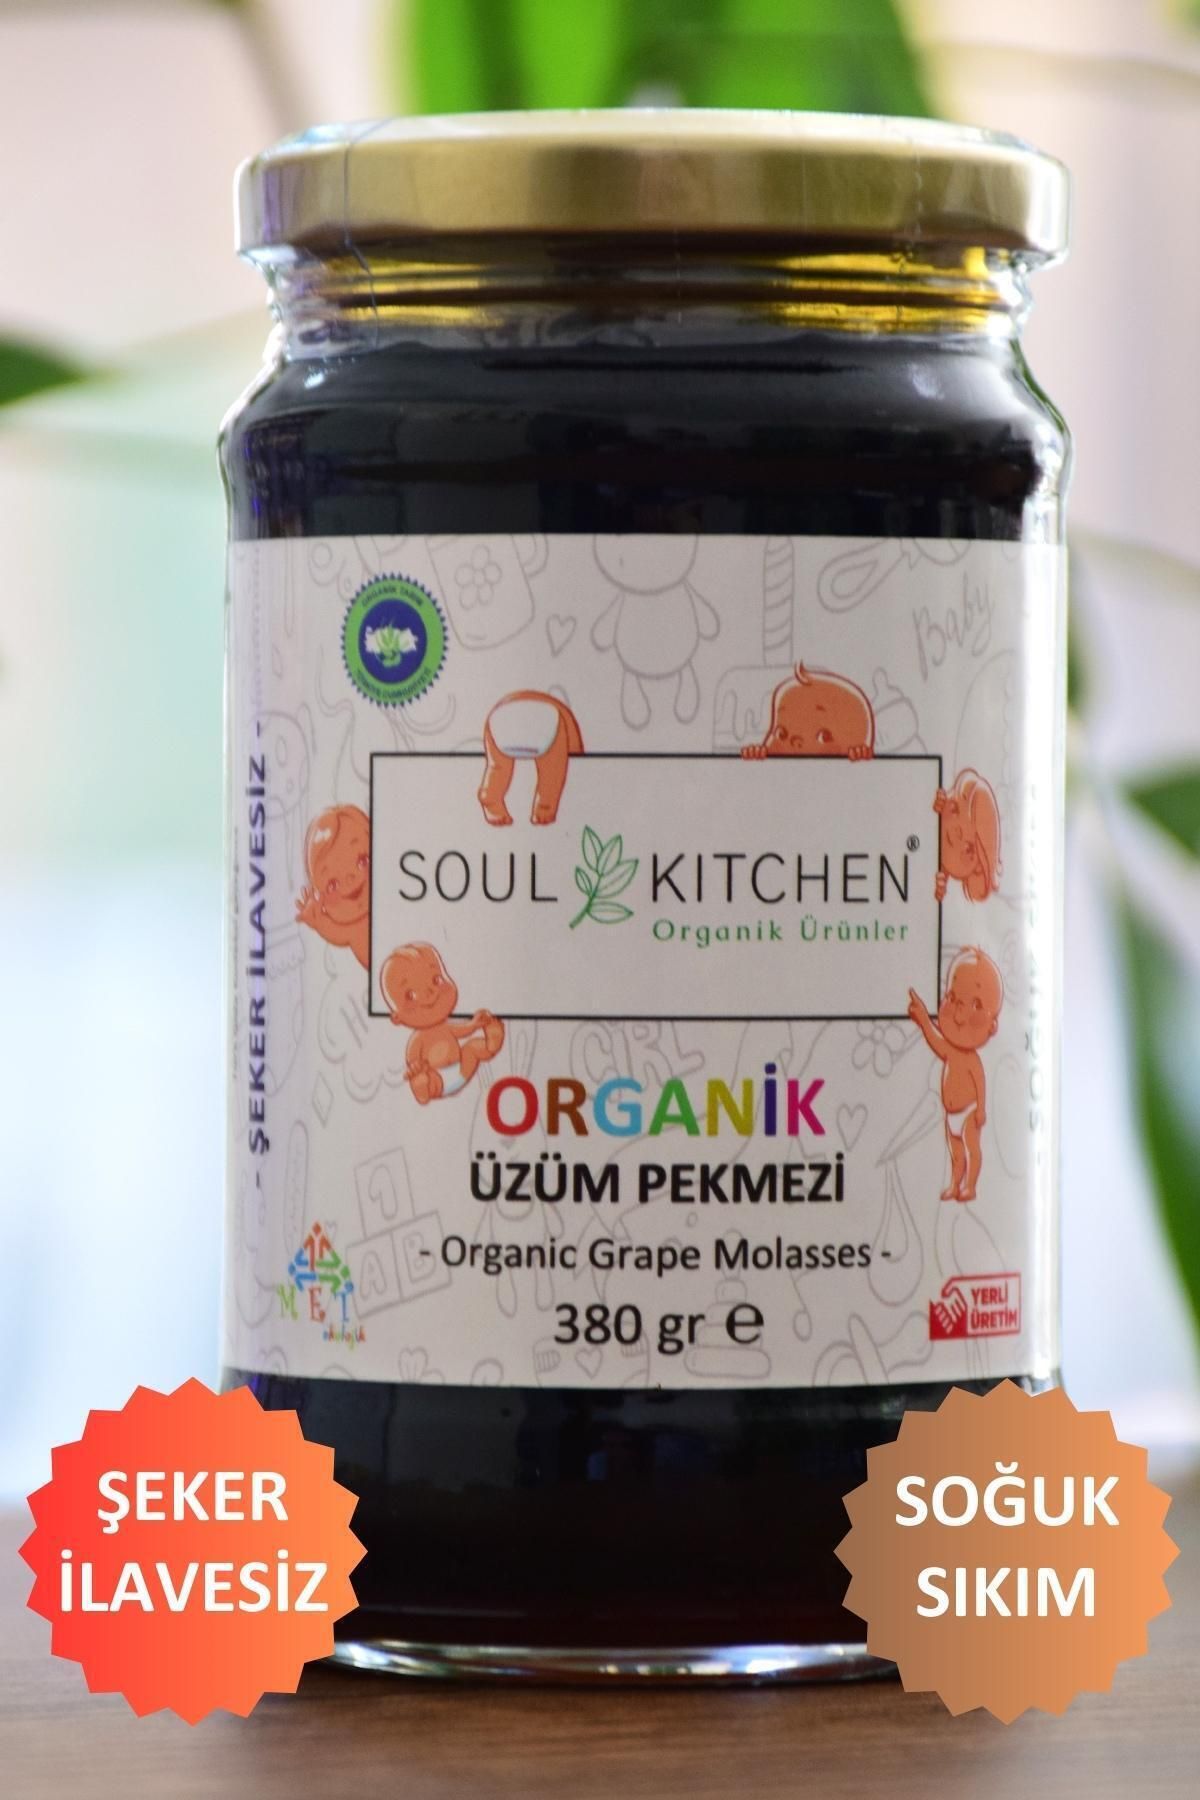 Soul Kitchen Organik Ürünler Organik Bebek Üzüm Pekmezi 380gr (SOĞUK SIKIM) (ŞEKER İLAVESİZ)